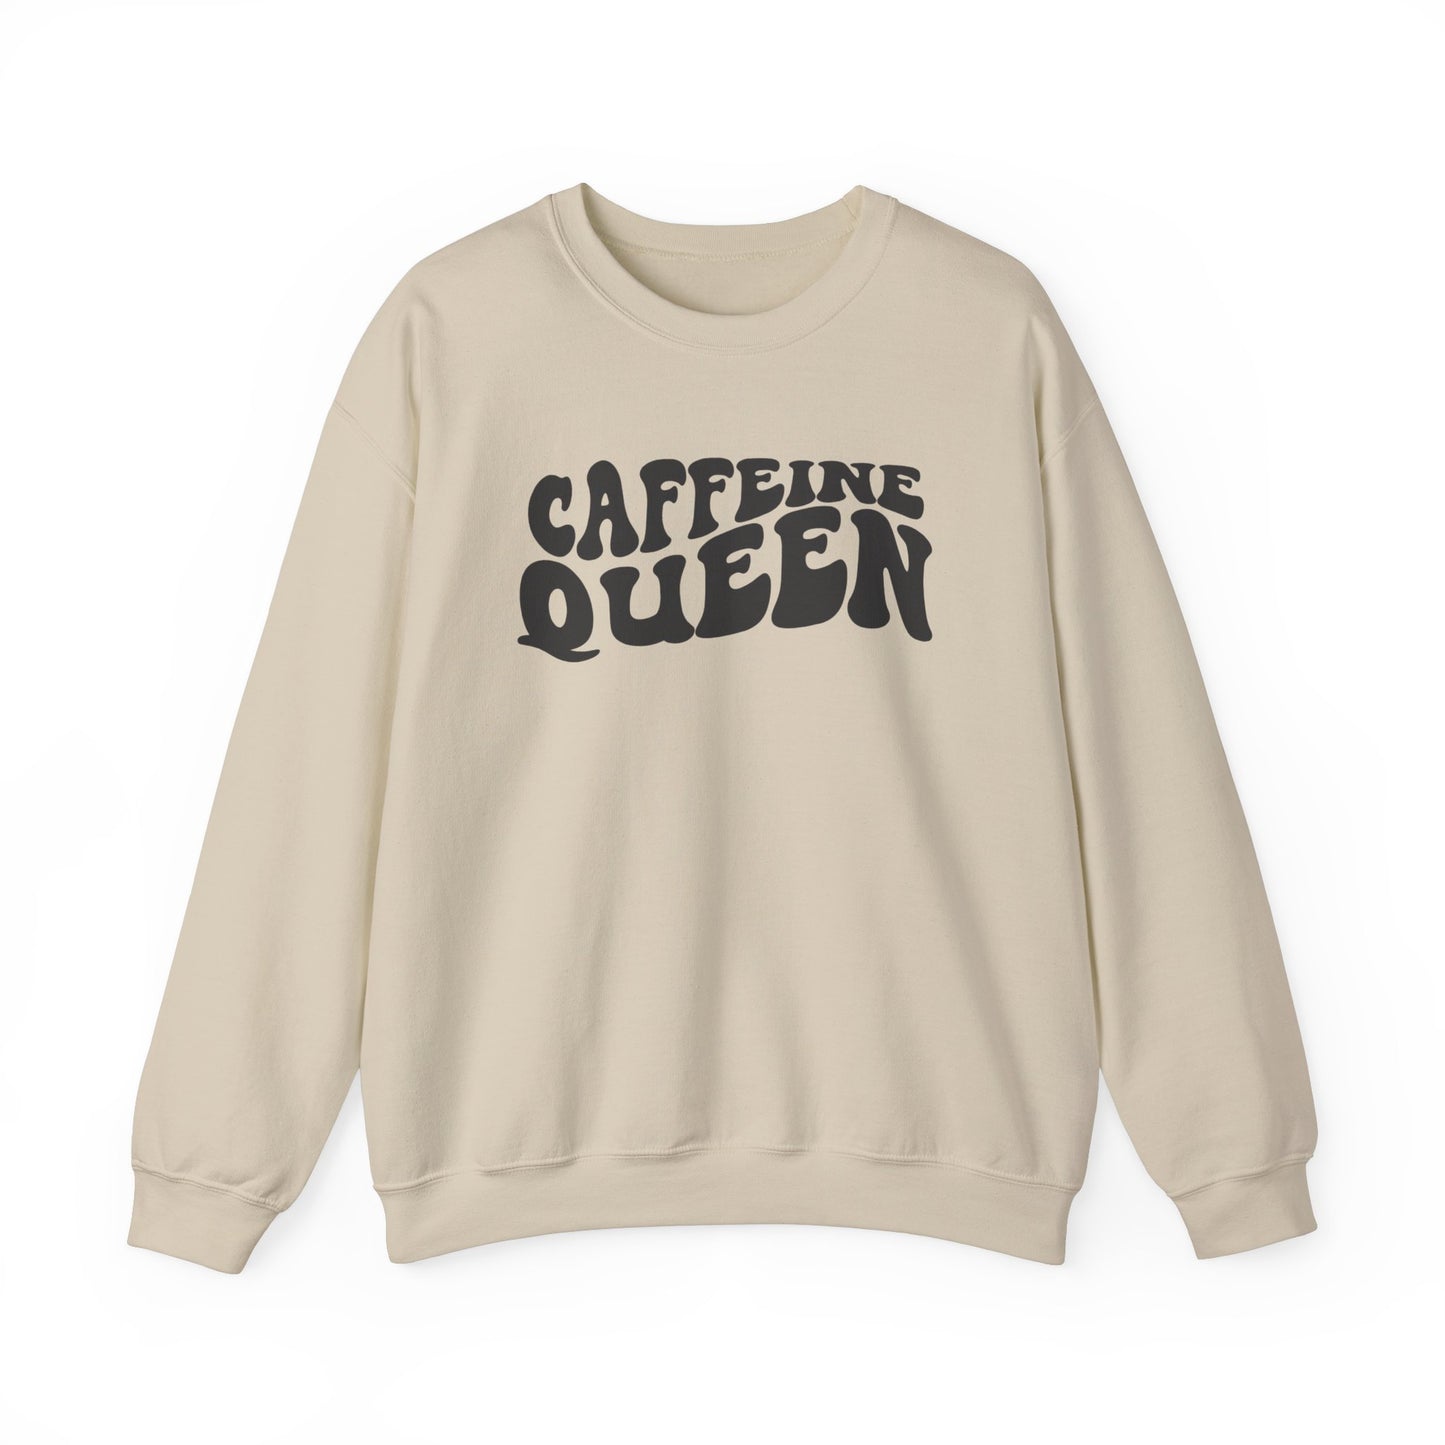 Caffeine Queen Crewneck Sweatshirt